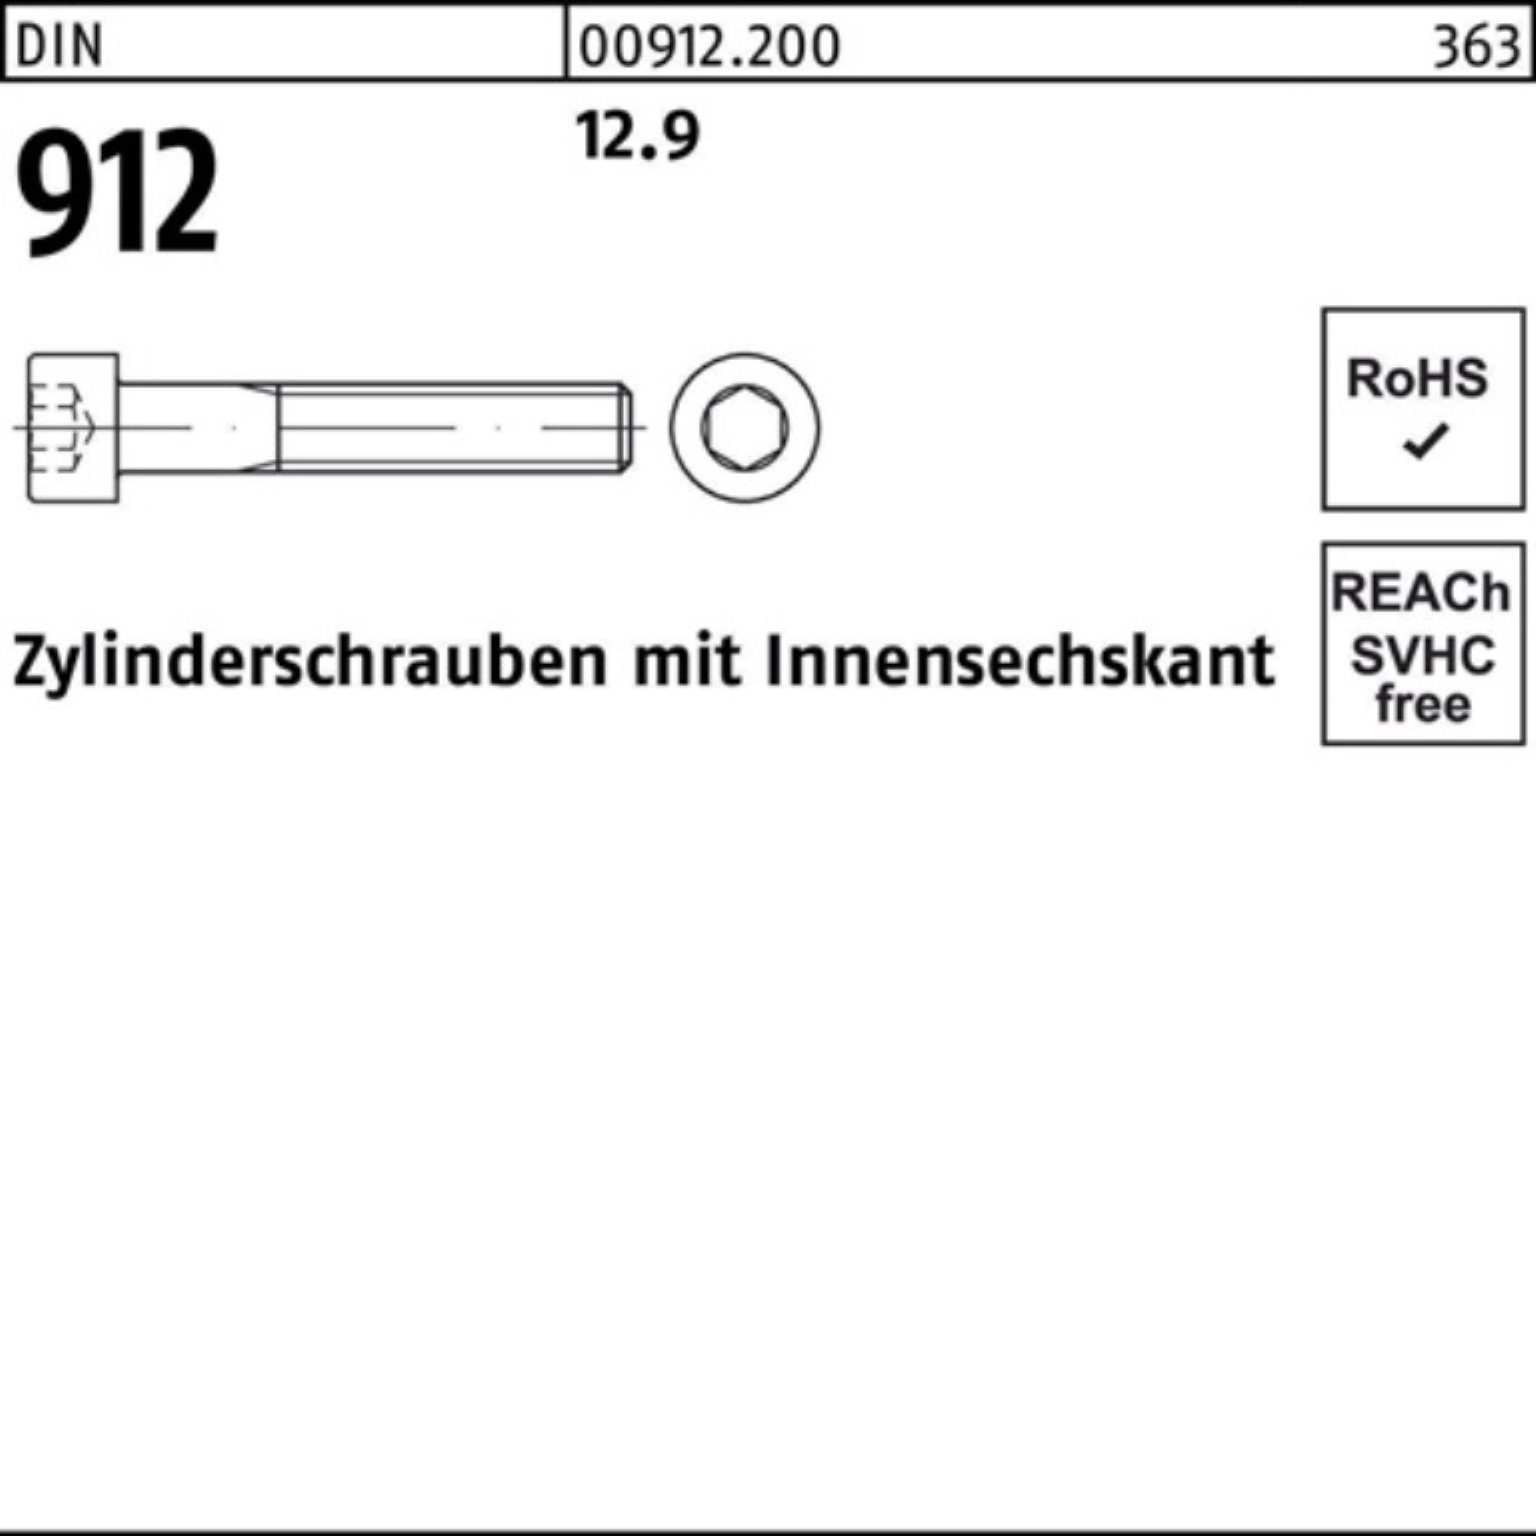 8 500er 500 Stück Reyher Innen-6kt 912 12.9 Zylinderschraube DIN M4x Zylinderschraube DI Pack